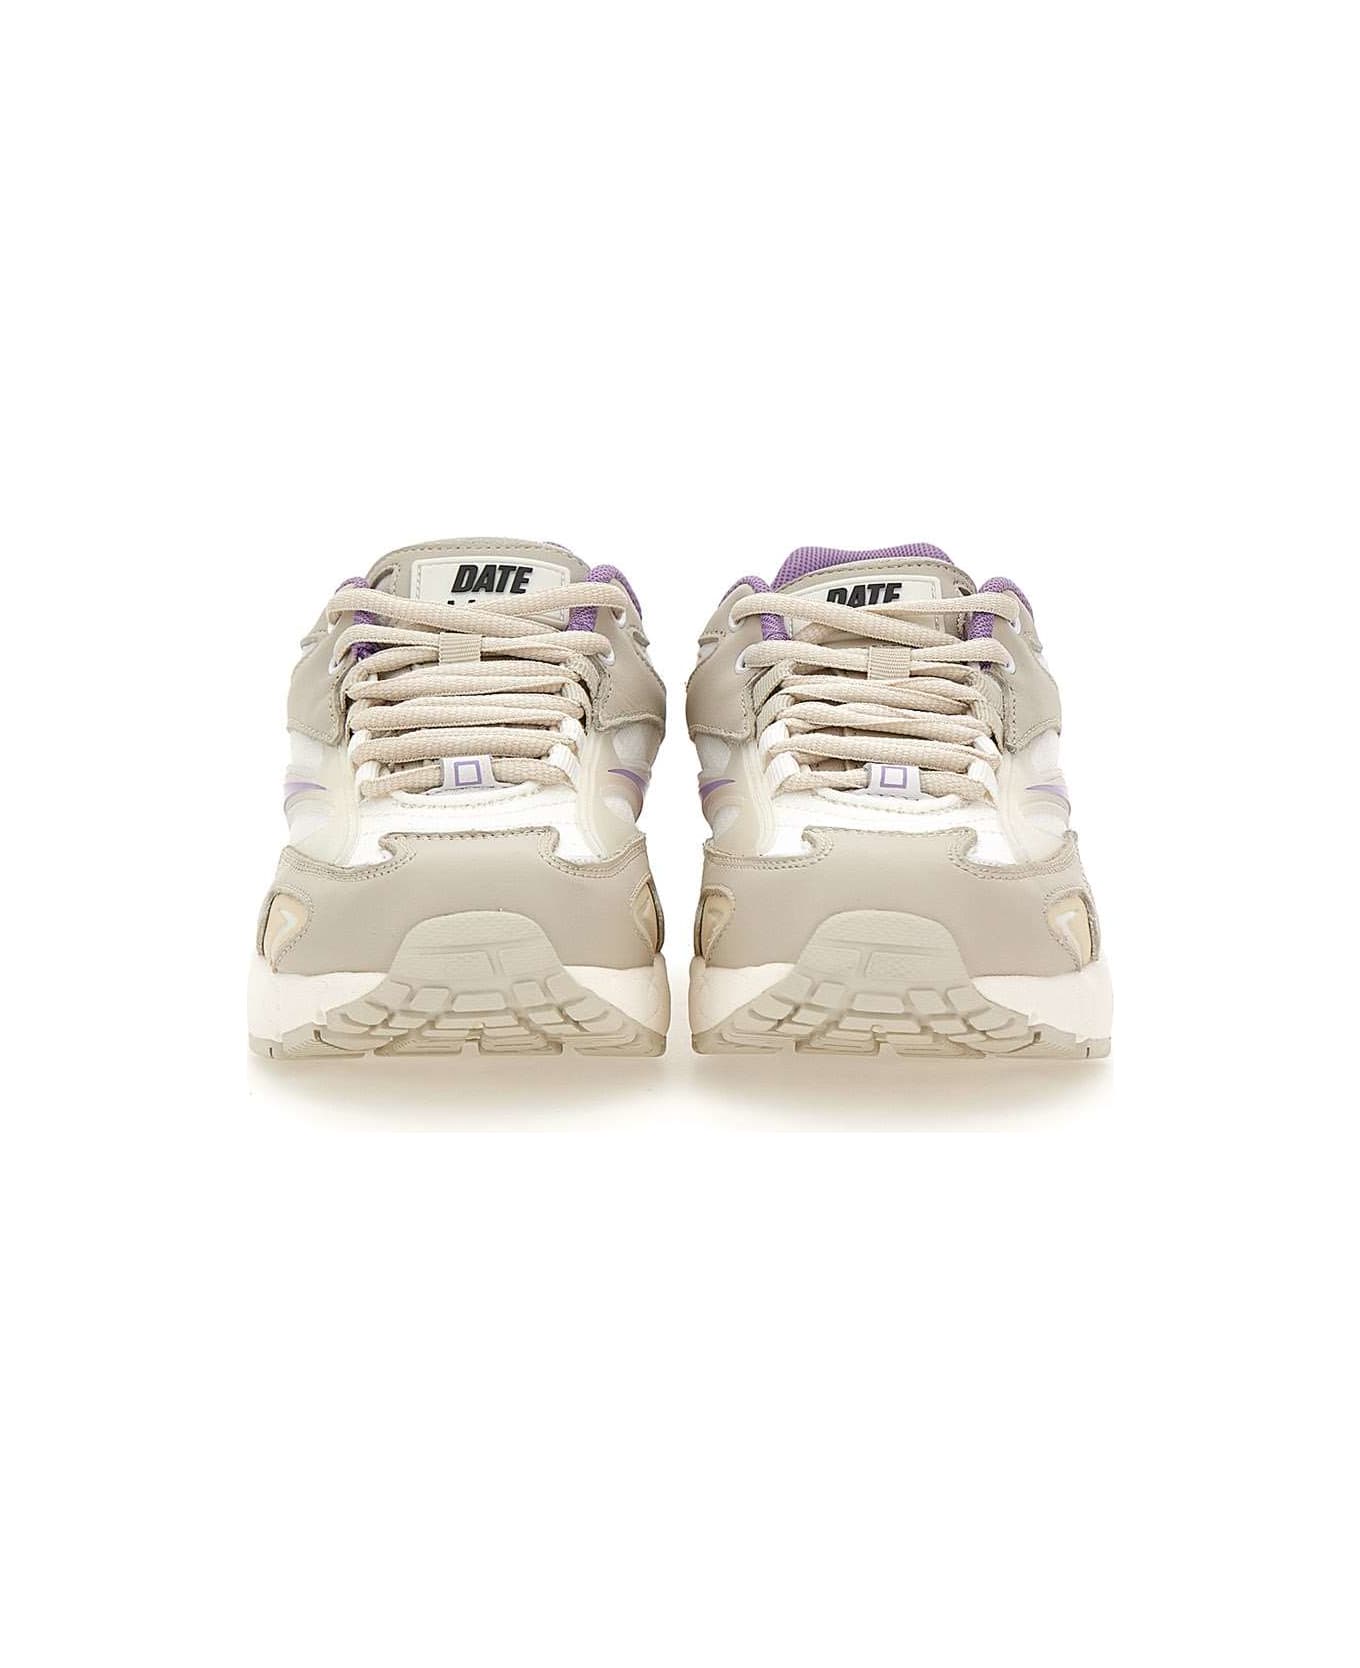 D.A.T.E. "sn23 Net" Sneakers - White-lilac